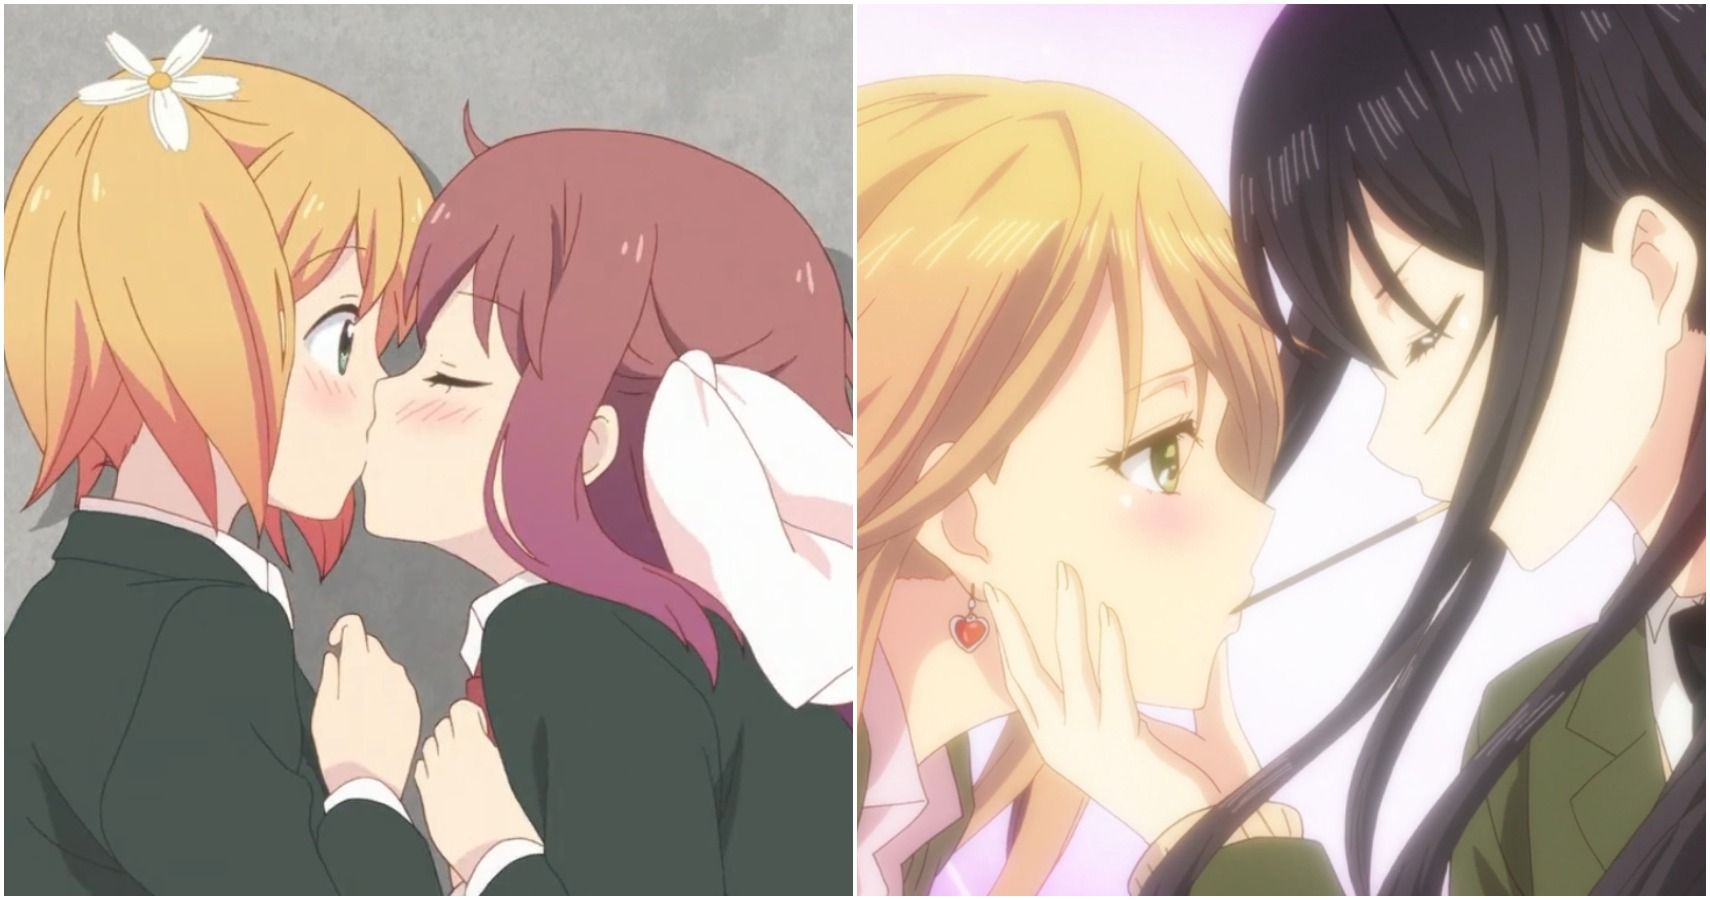 Yuri kissing games